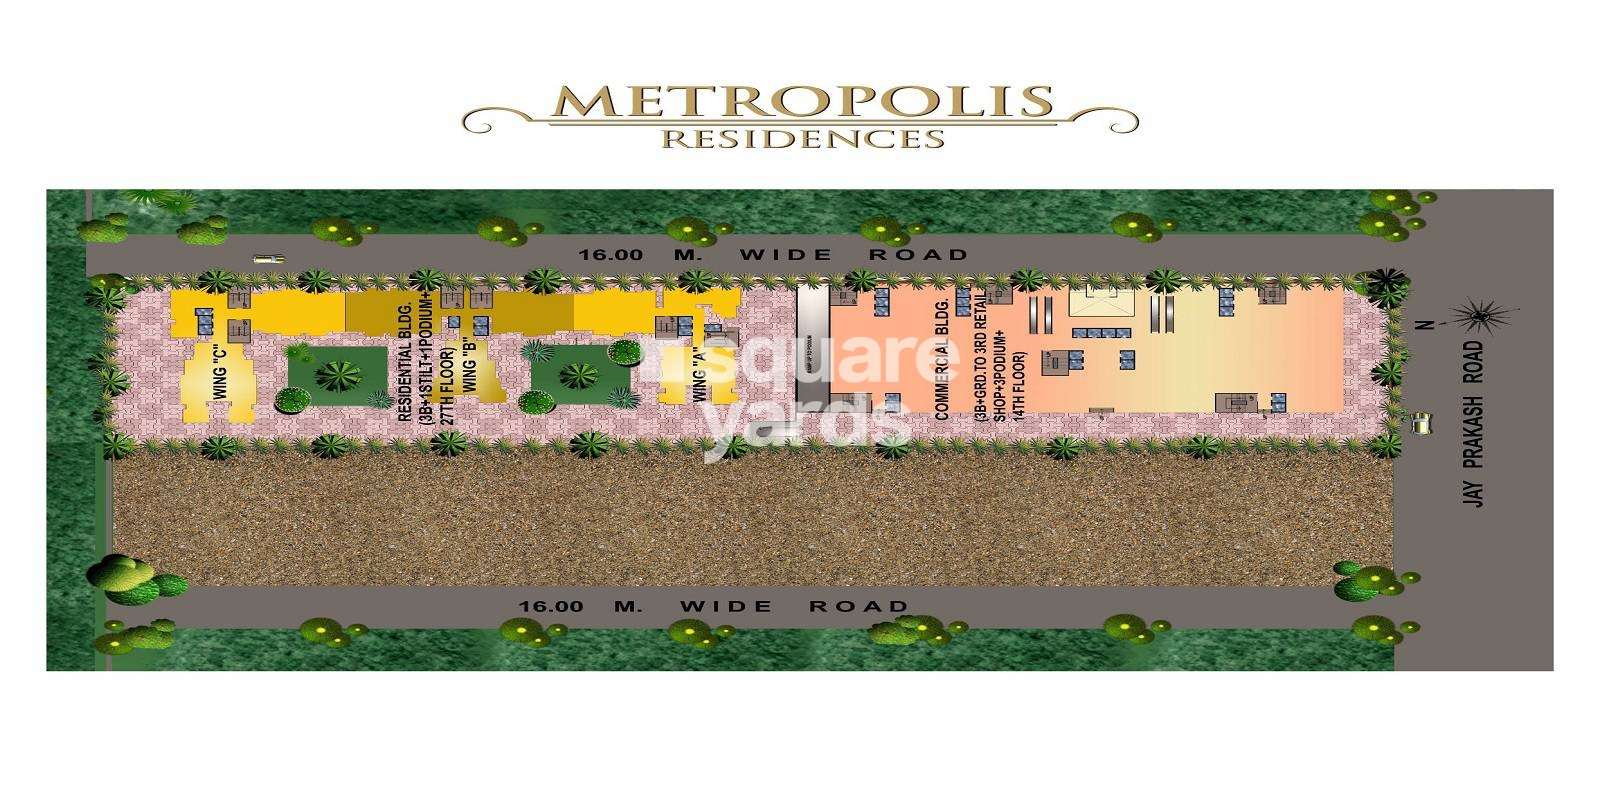 hdil metropolis residences project master plan image1